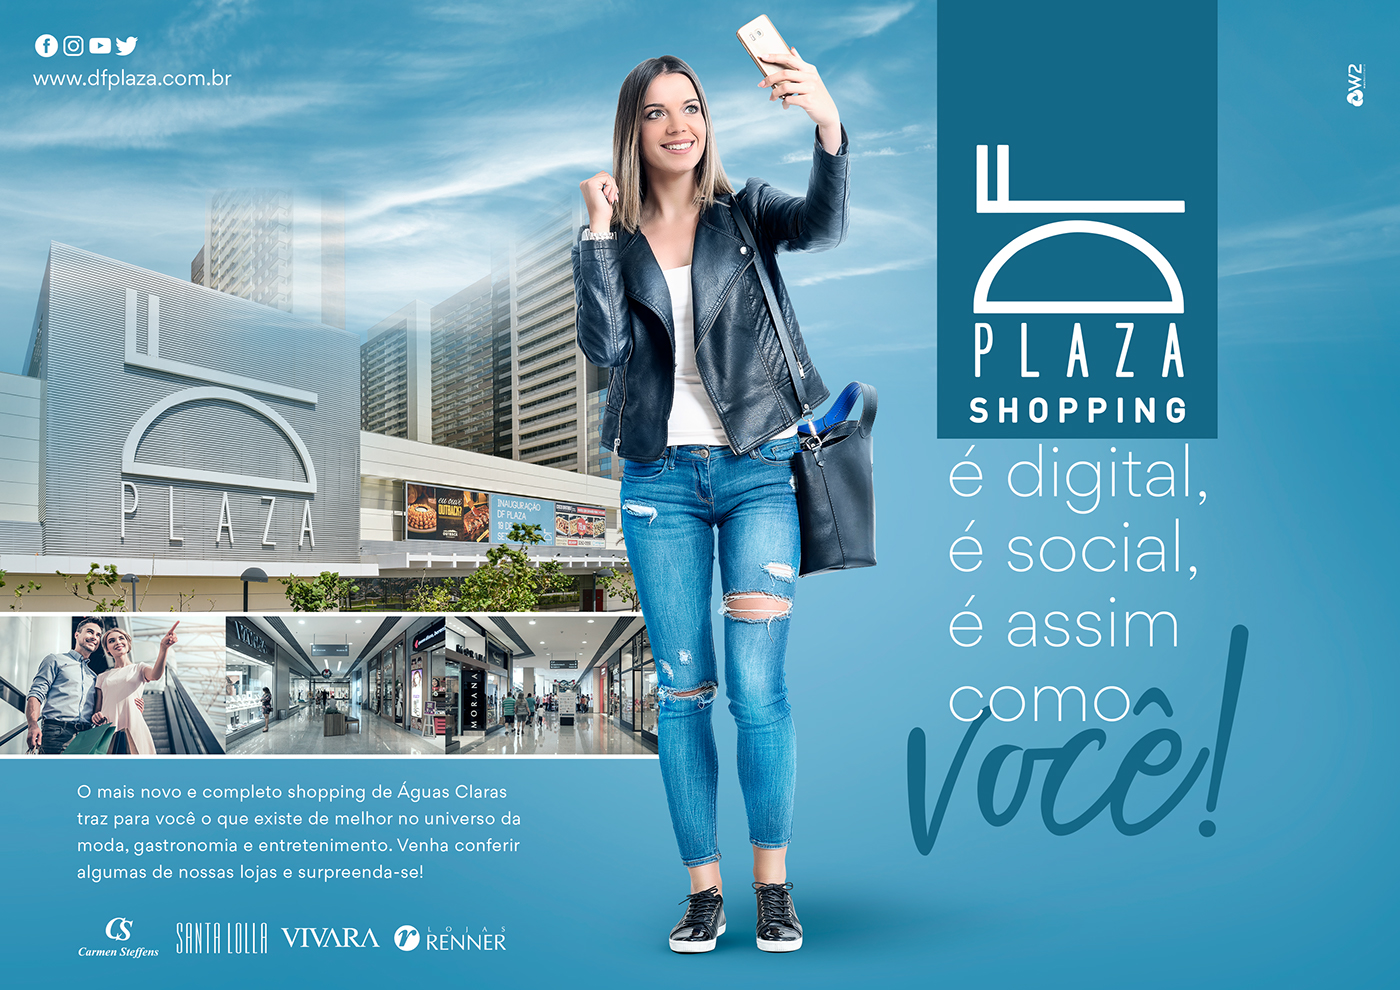 Shopping moda estilo brasilia conceito retouch photoshop  social media